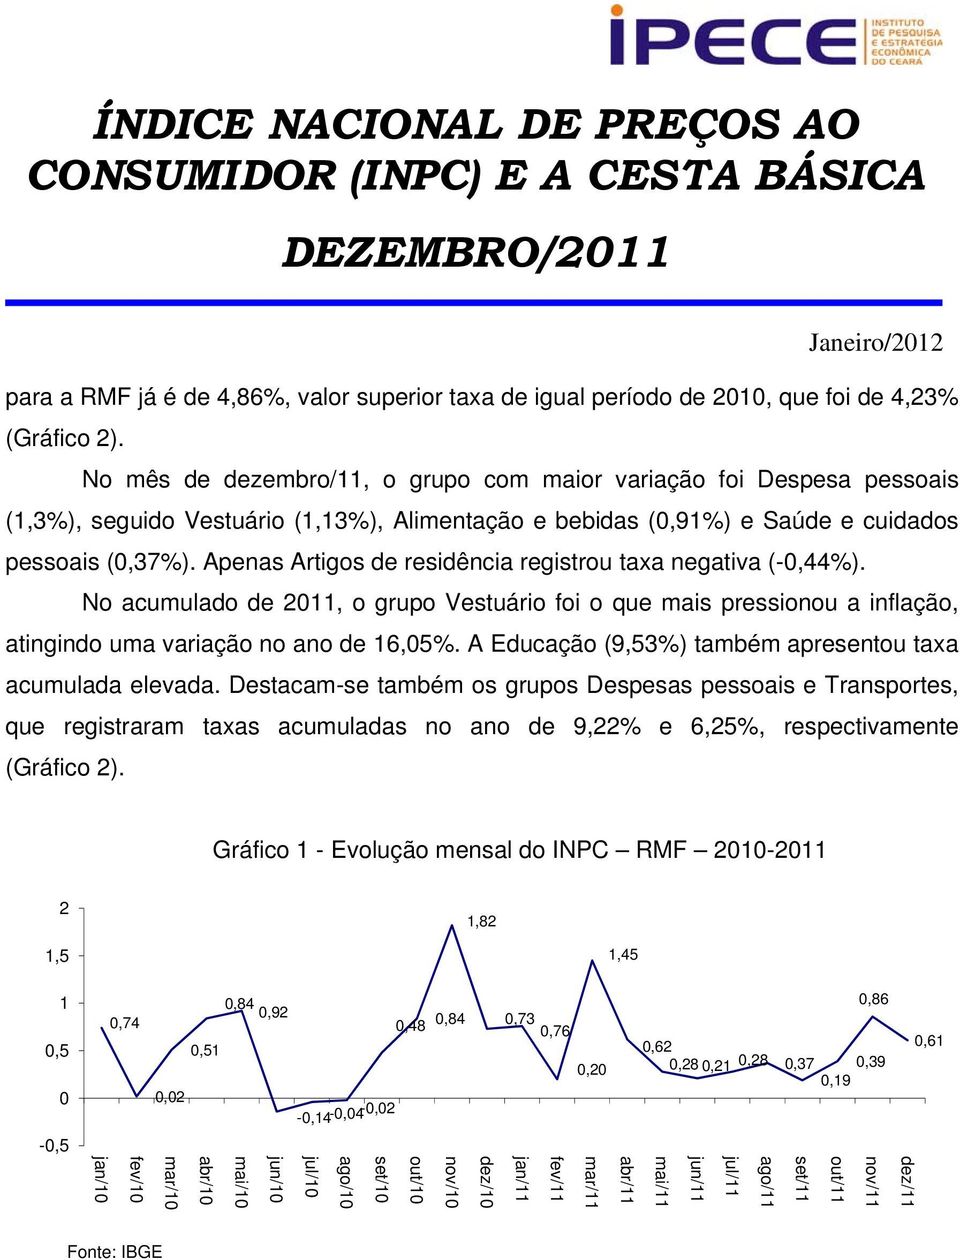 Apenas Artigos de residência registrou taxa negativa (-0,44%). No acumulado de, o grupo Vestuário foi o que mais pressionou a inflação, atingindo uma variação no ano de 16,05%.